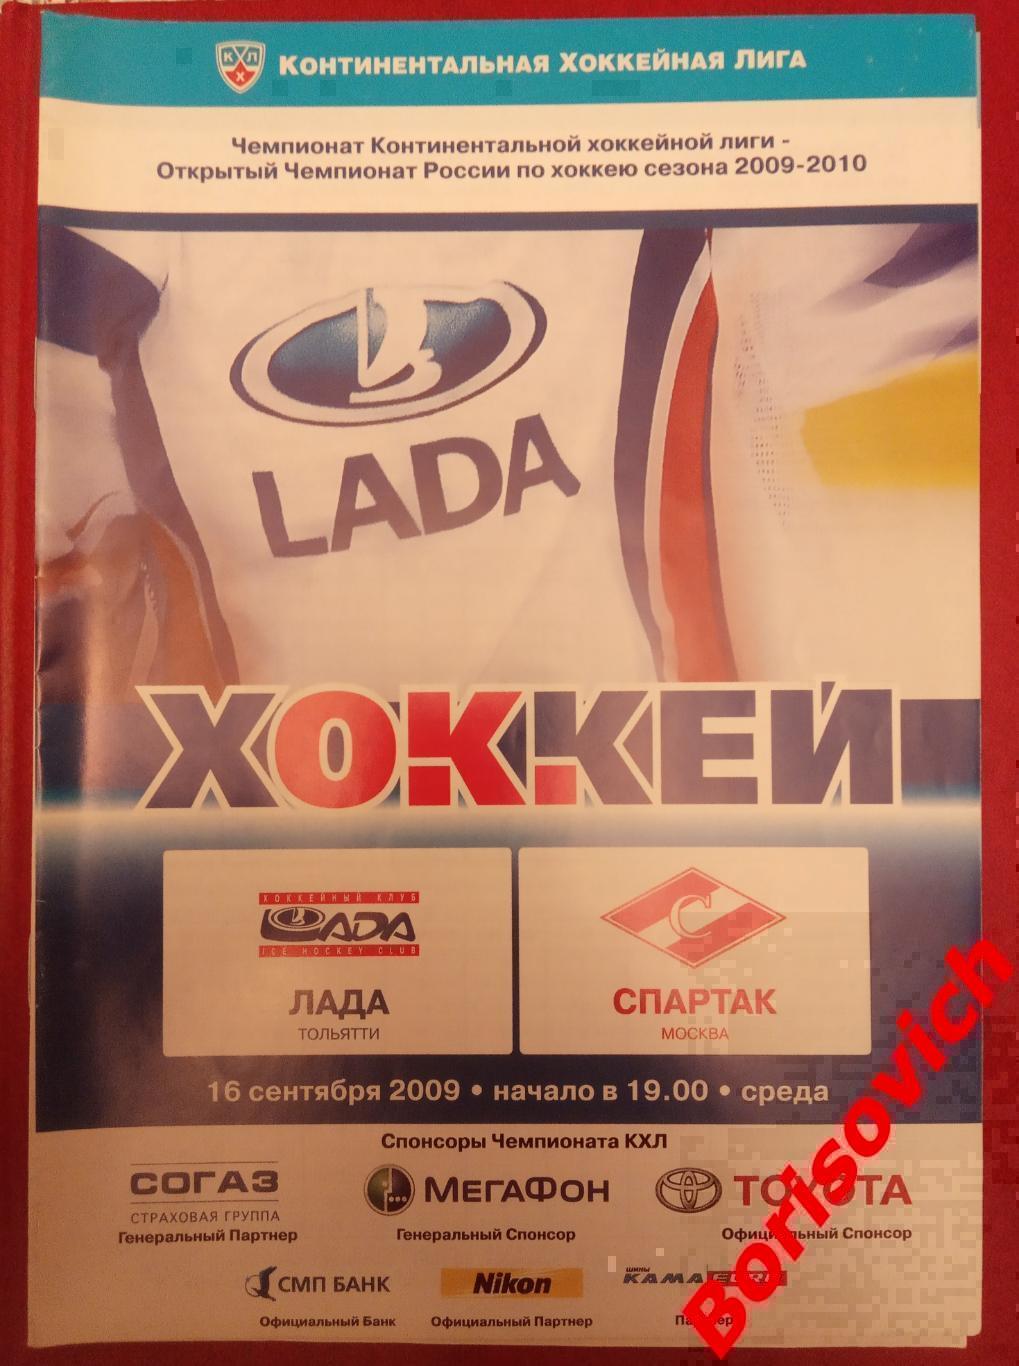 Лада Тольятти - Спартак Москва 16-09-2009